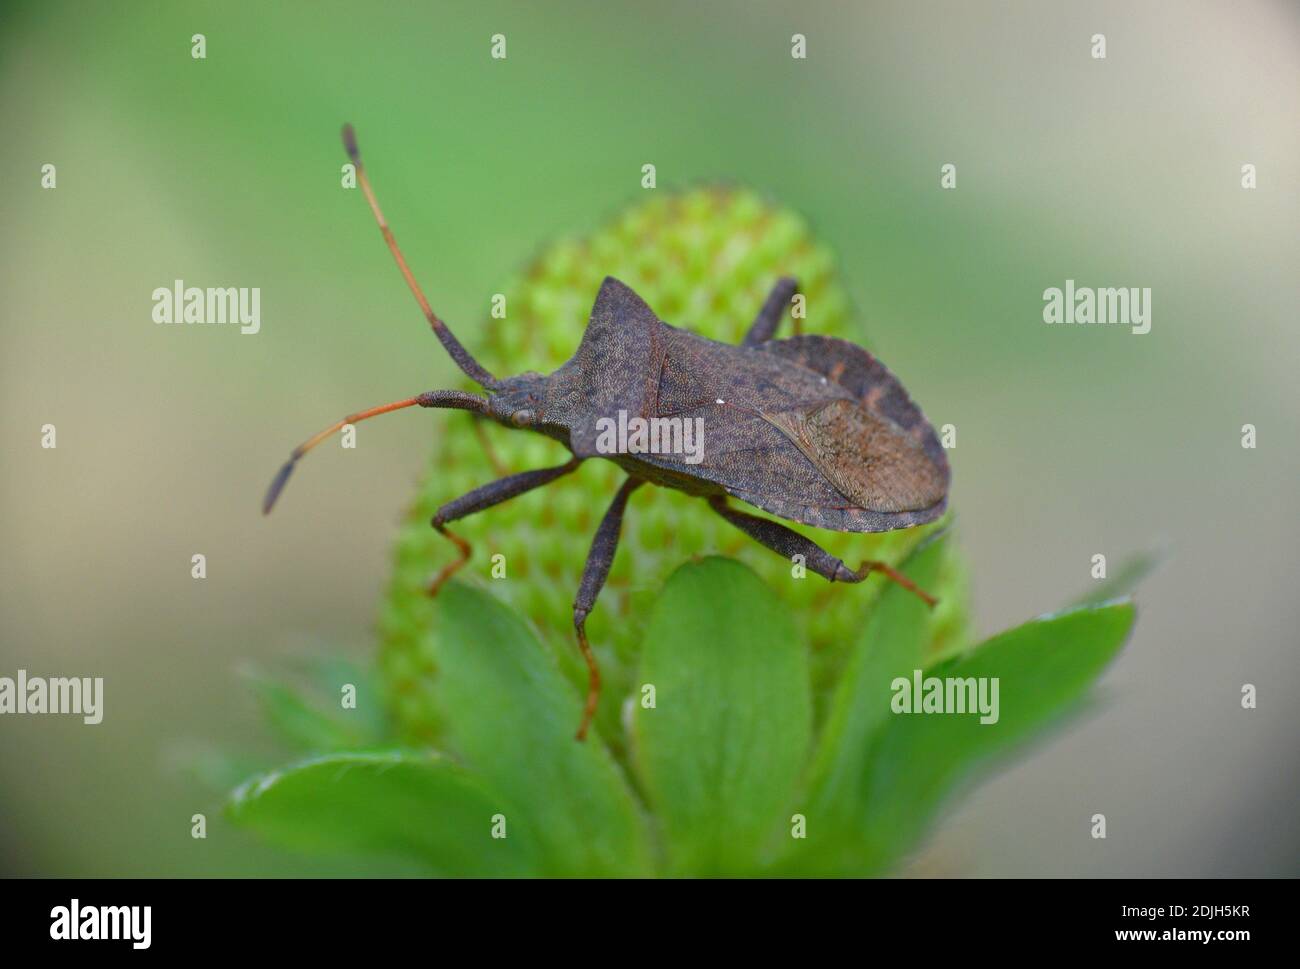 Insecte de la famille des Corinae sur la fraise verte. Banque D'Images